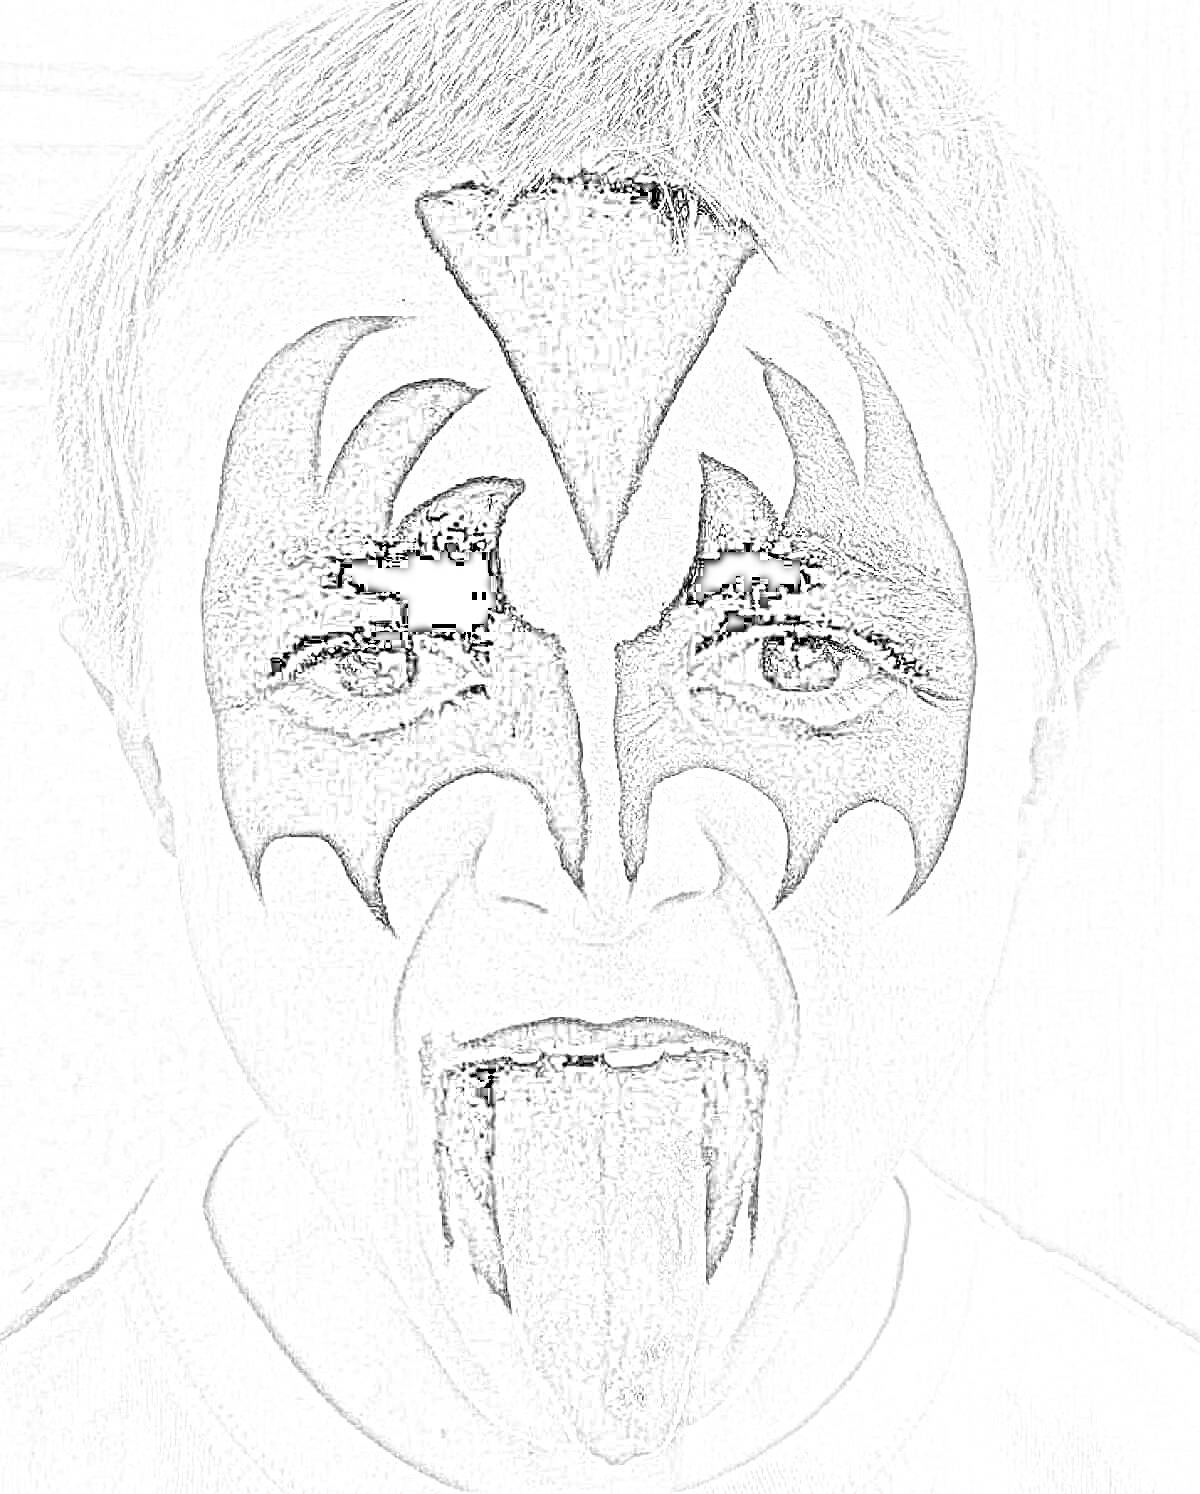 Раскраска мальчик с крещенским гримом на лице, похожим на маскировку, высунутый язык, в черно-белом цветовом формате